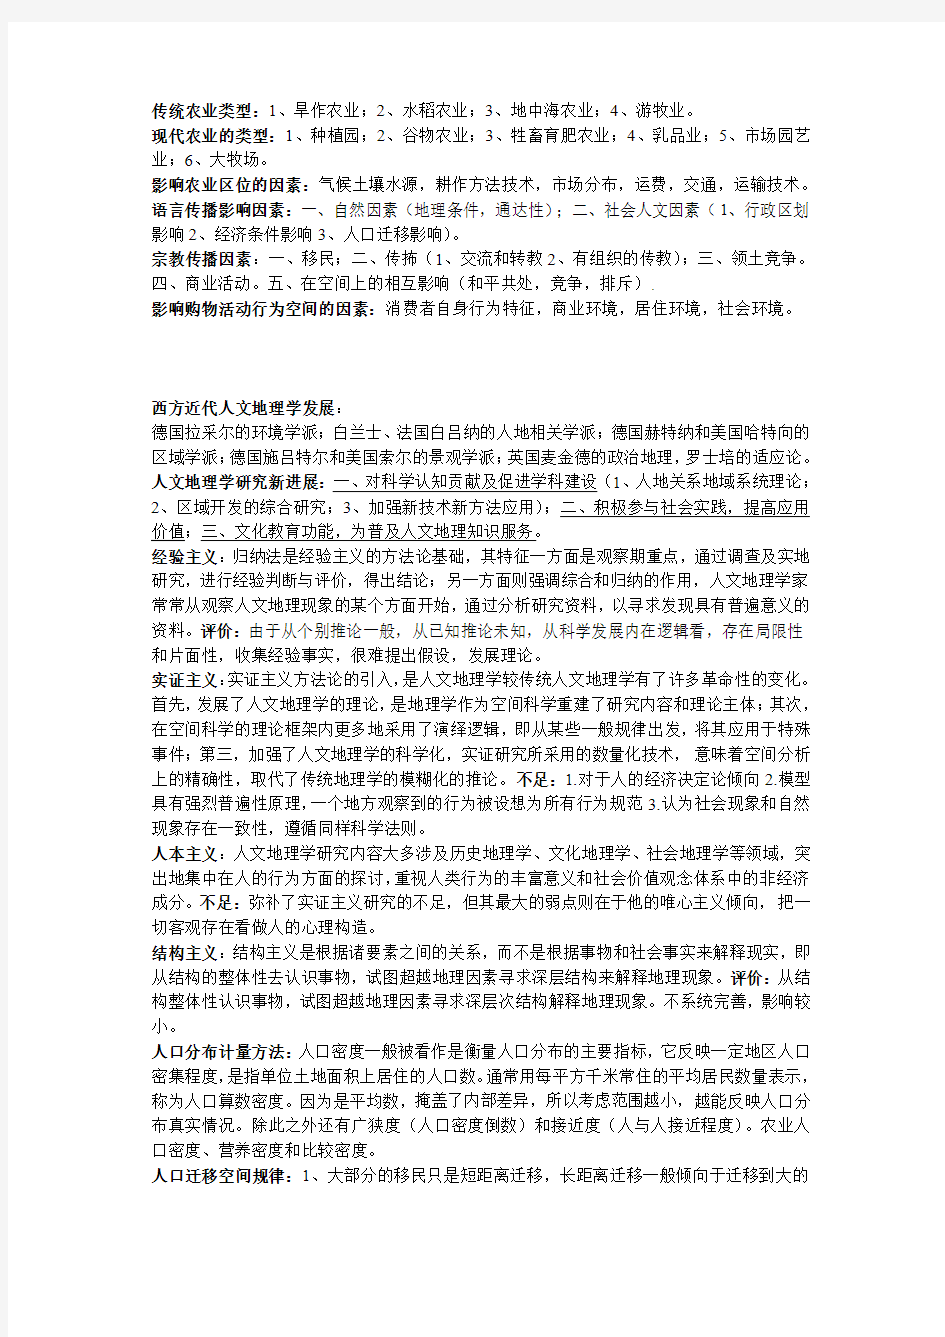 滁州学院人文地理学期末考试总结(14届学长)